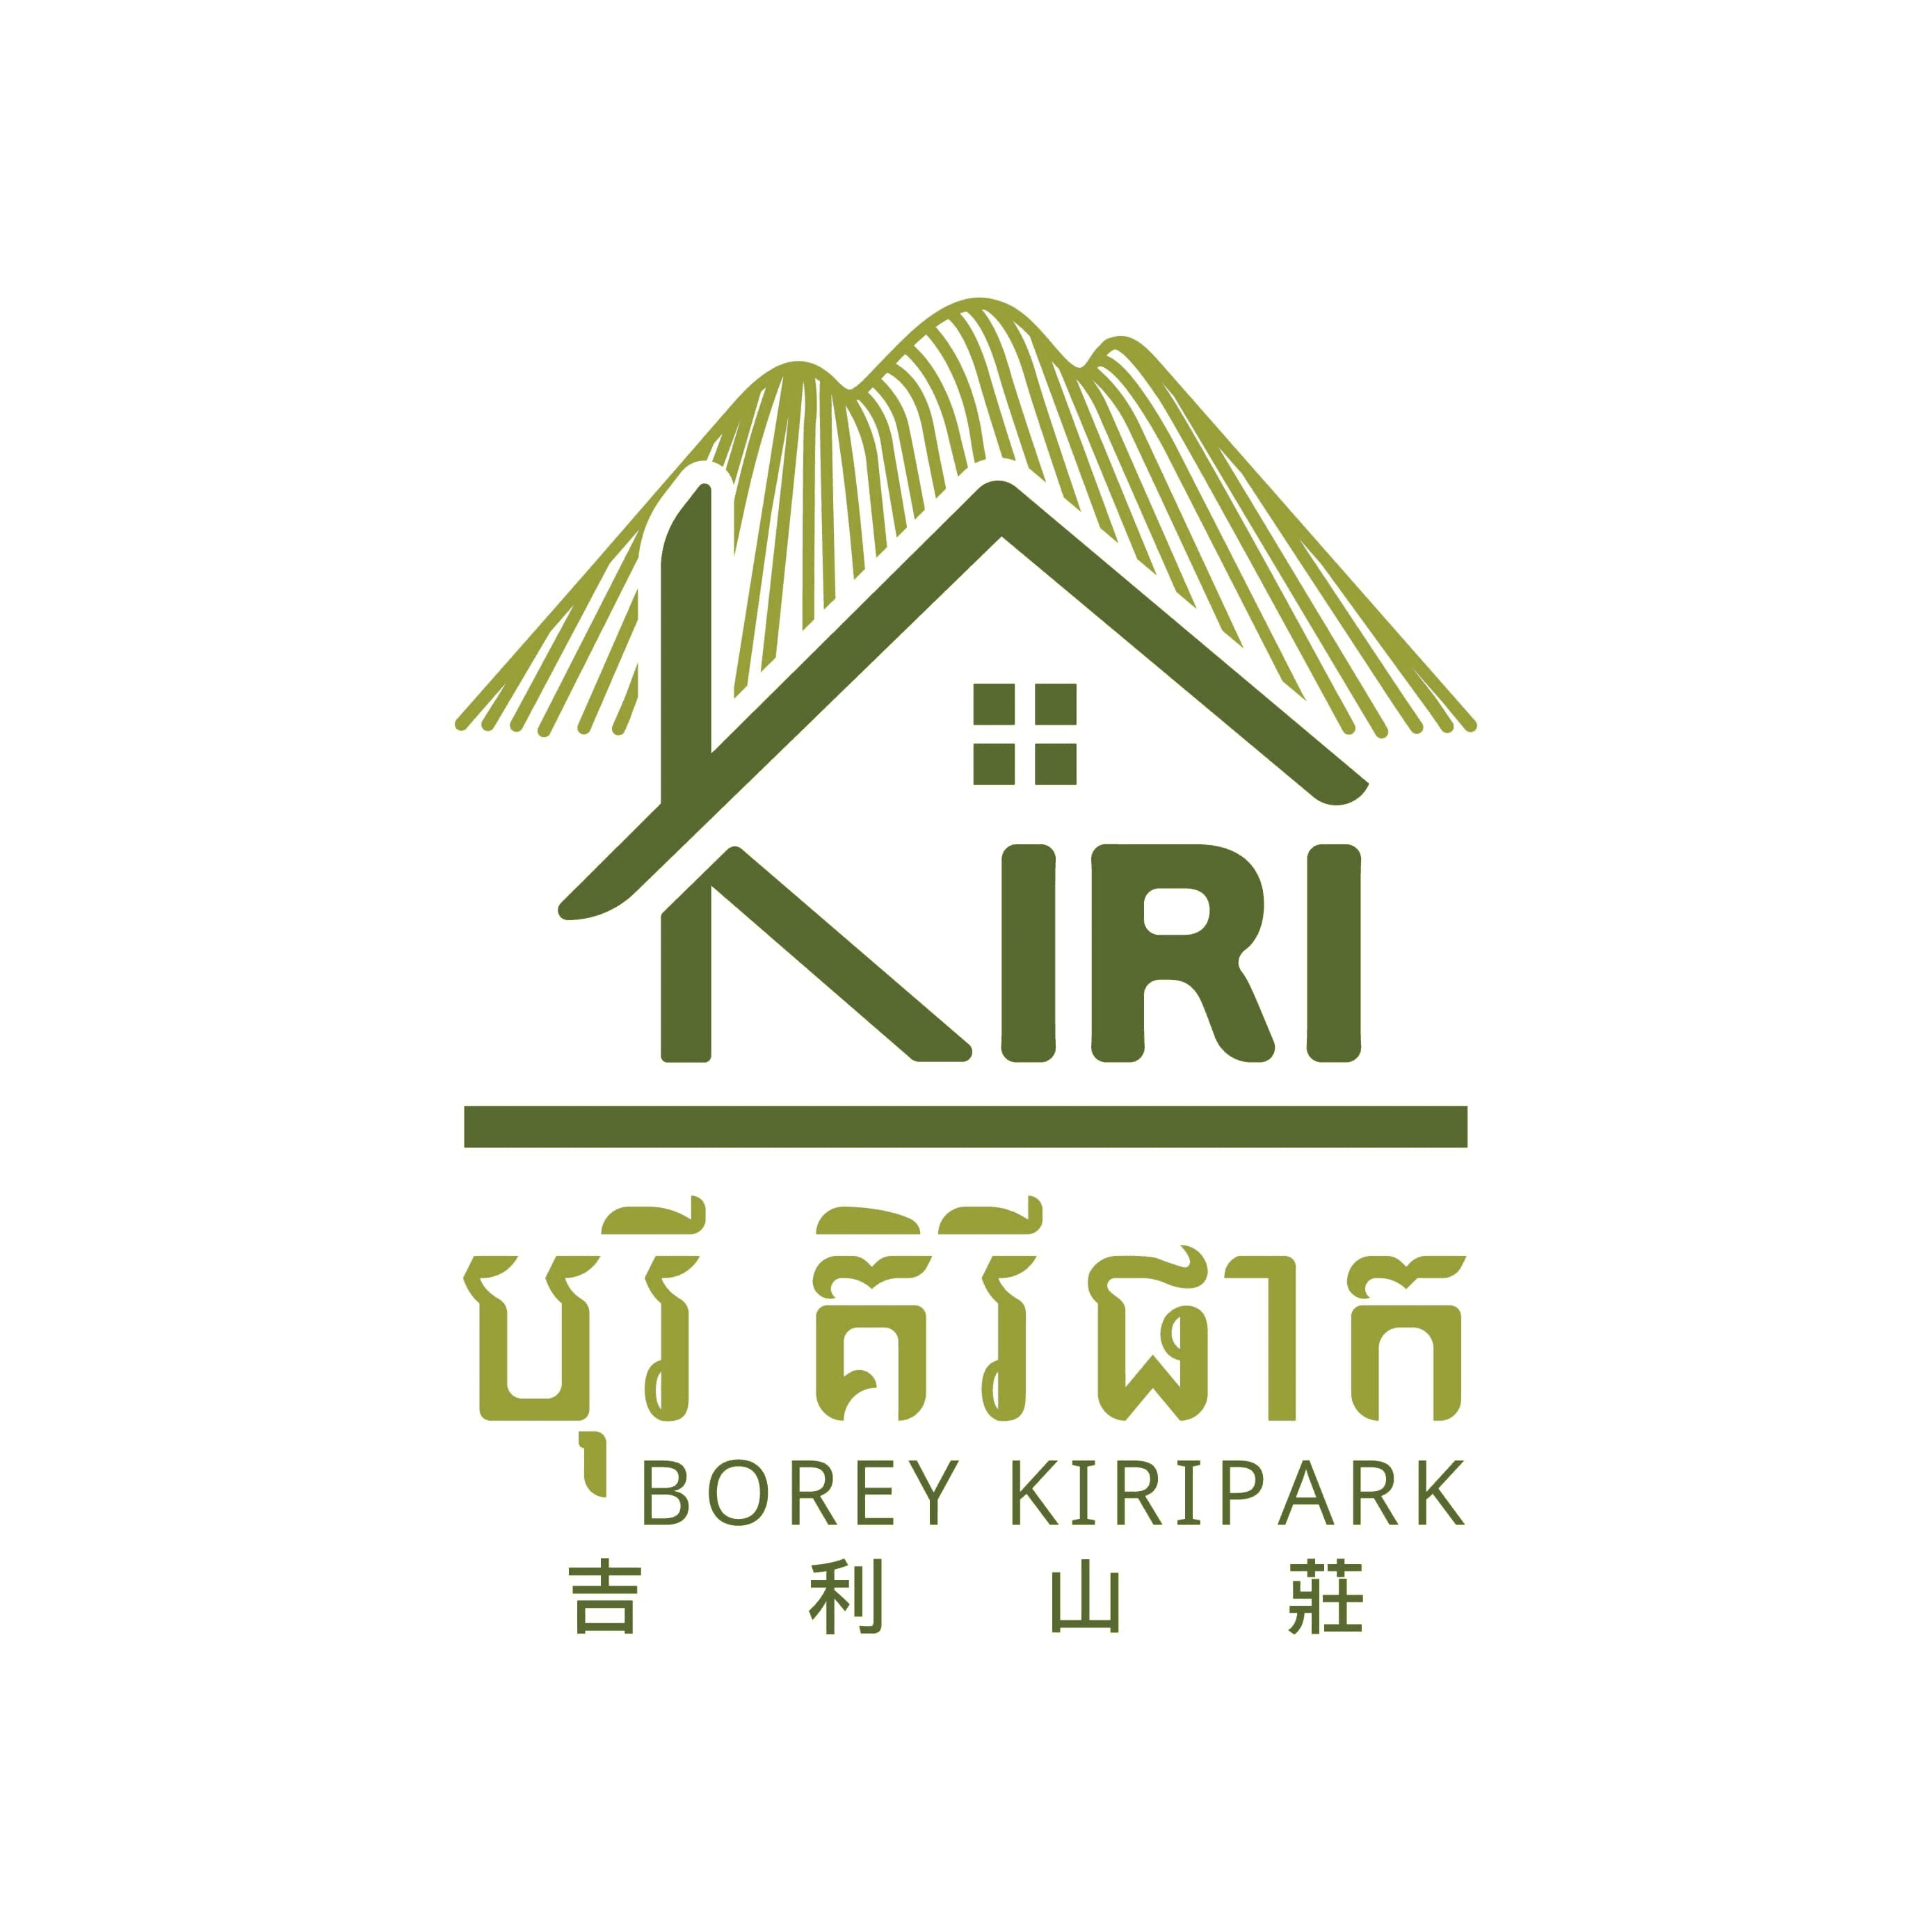 Borey Kiripark 